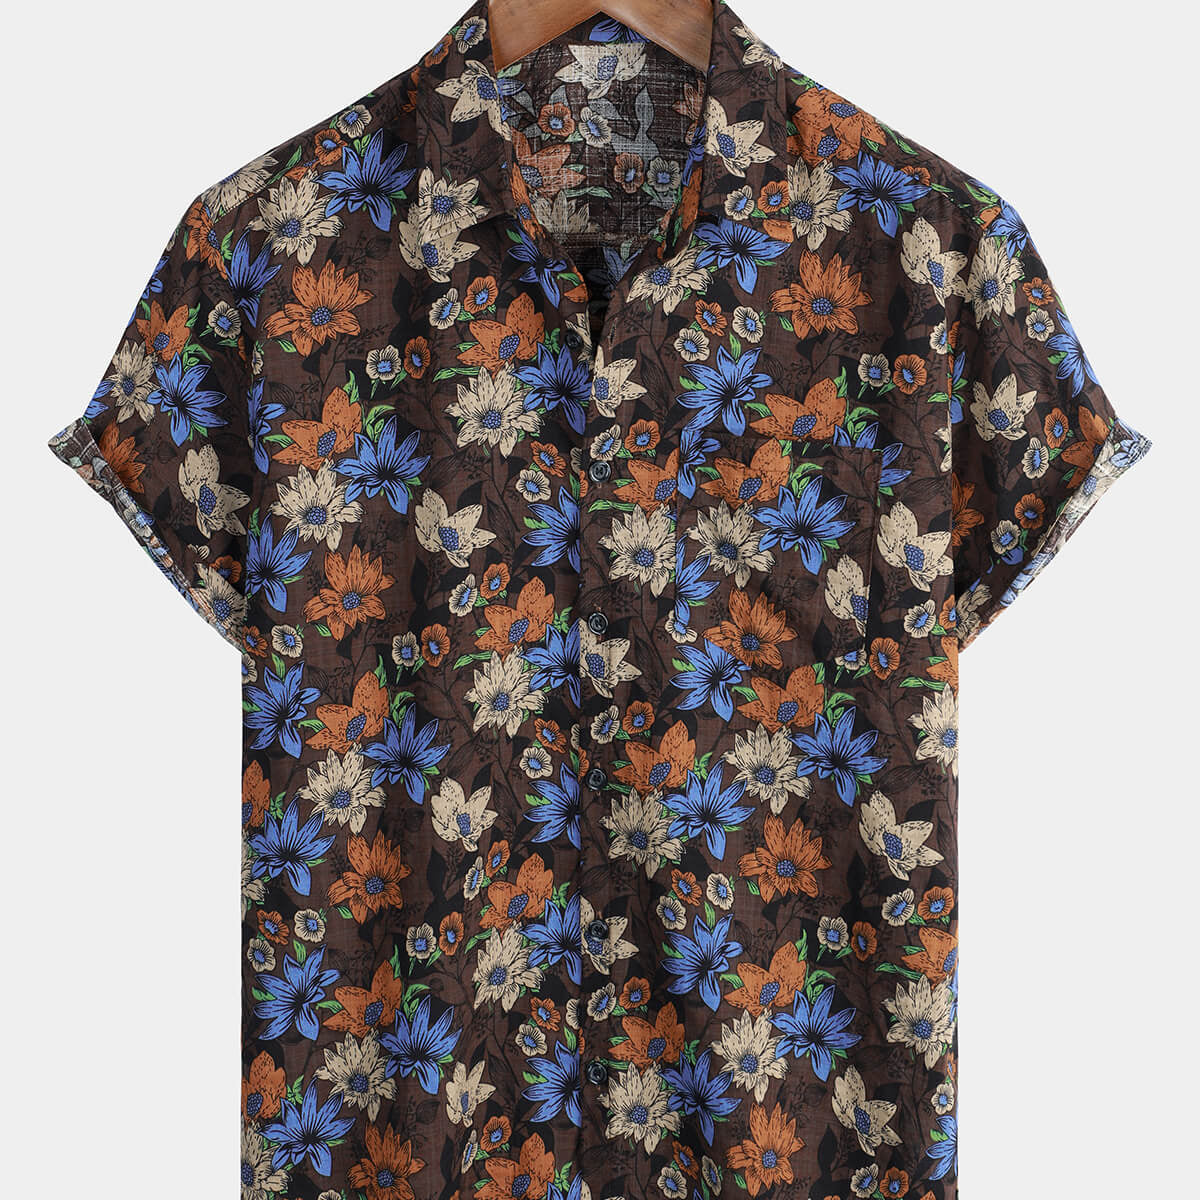 Men's Floral Short Sleeve Button Up Summer Shirt